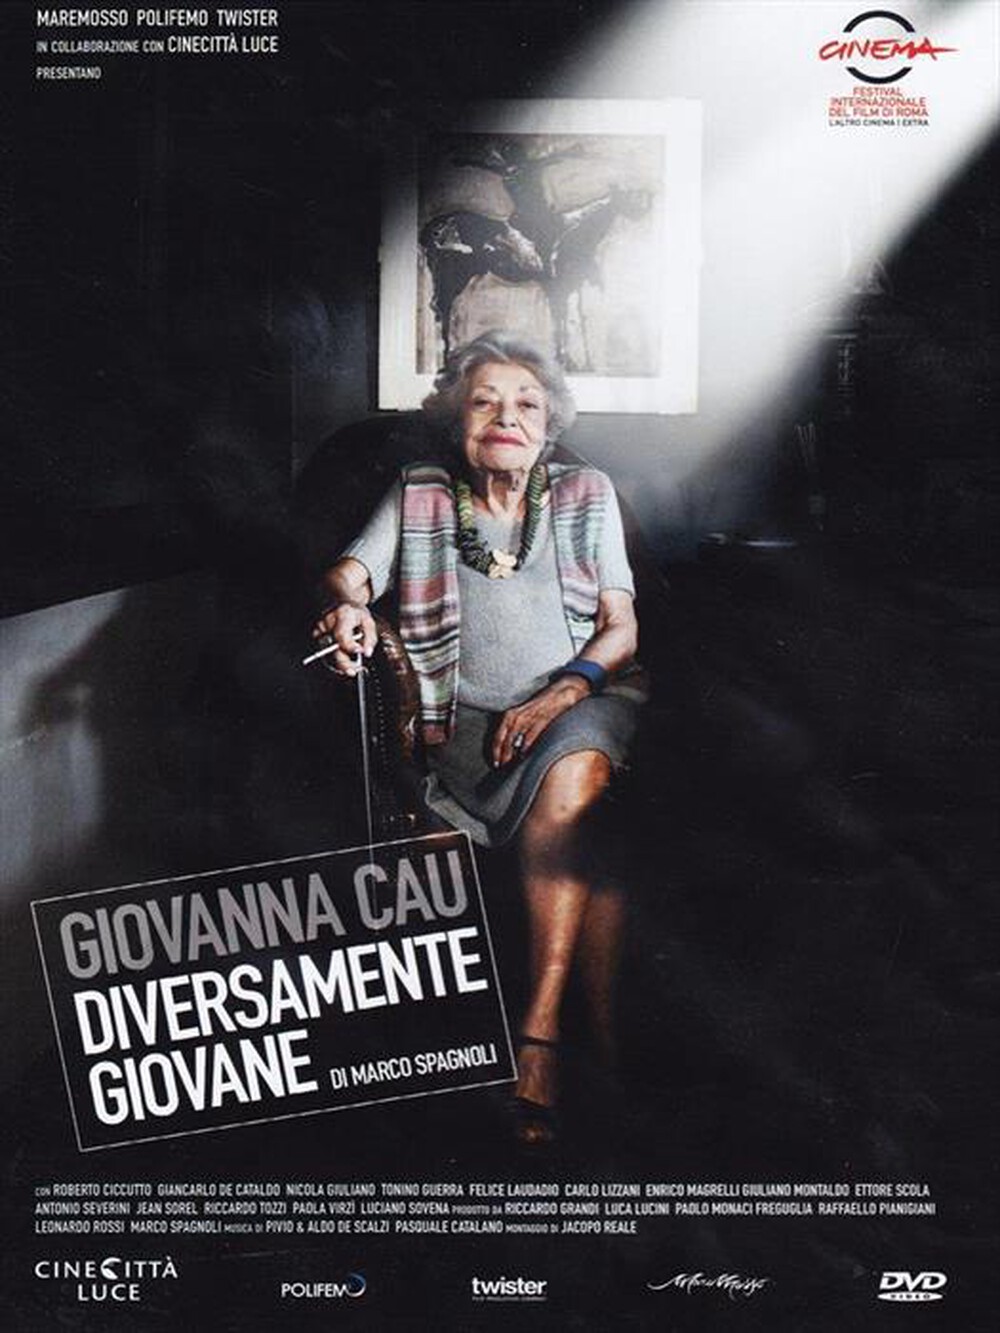 "ISTITUTO LUCE - Giovanna Cau - Diversamente Giovane - "